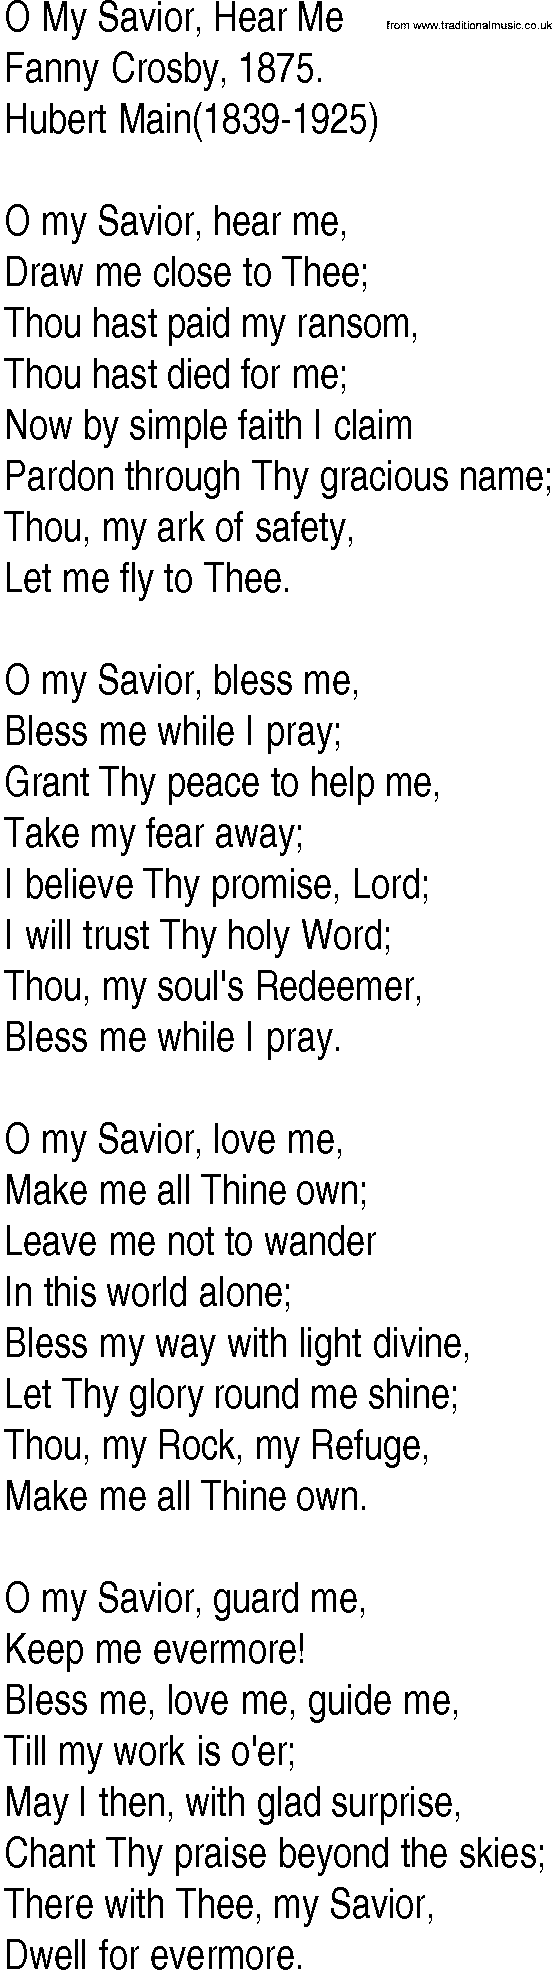 Hymn and Gospel Song: O My Savior, Hear Me by Fanny Crosby lyrics